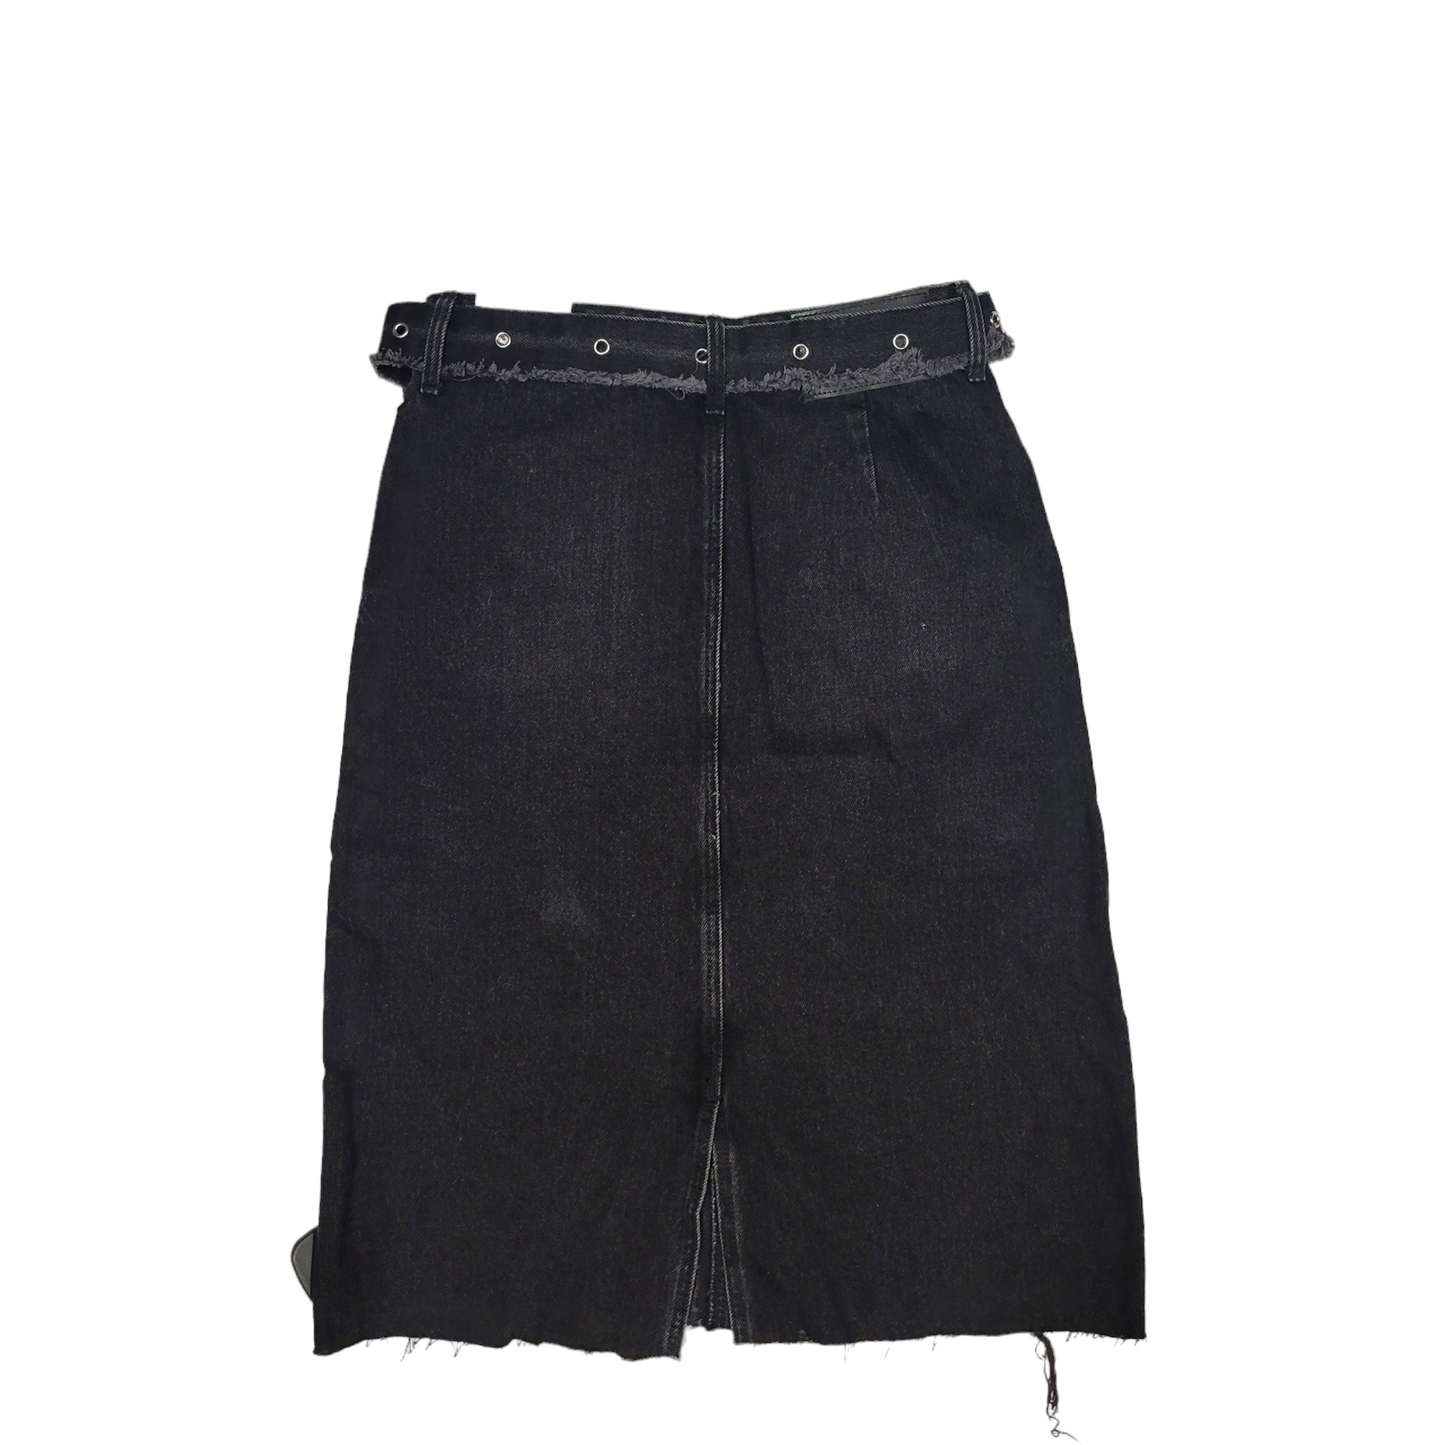 Skirt Midi By Zara  Size: Xs